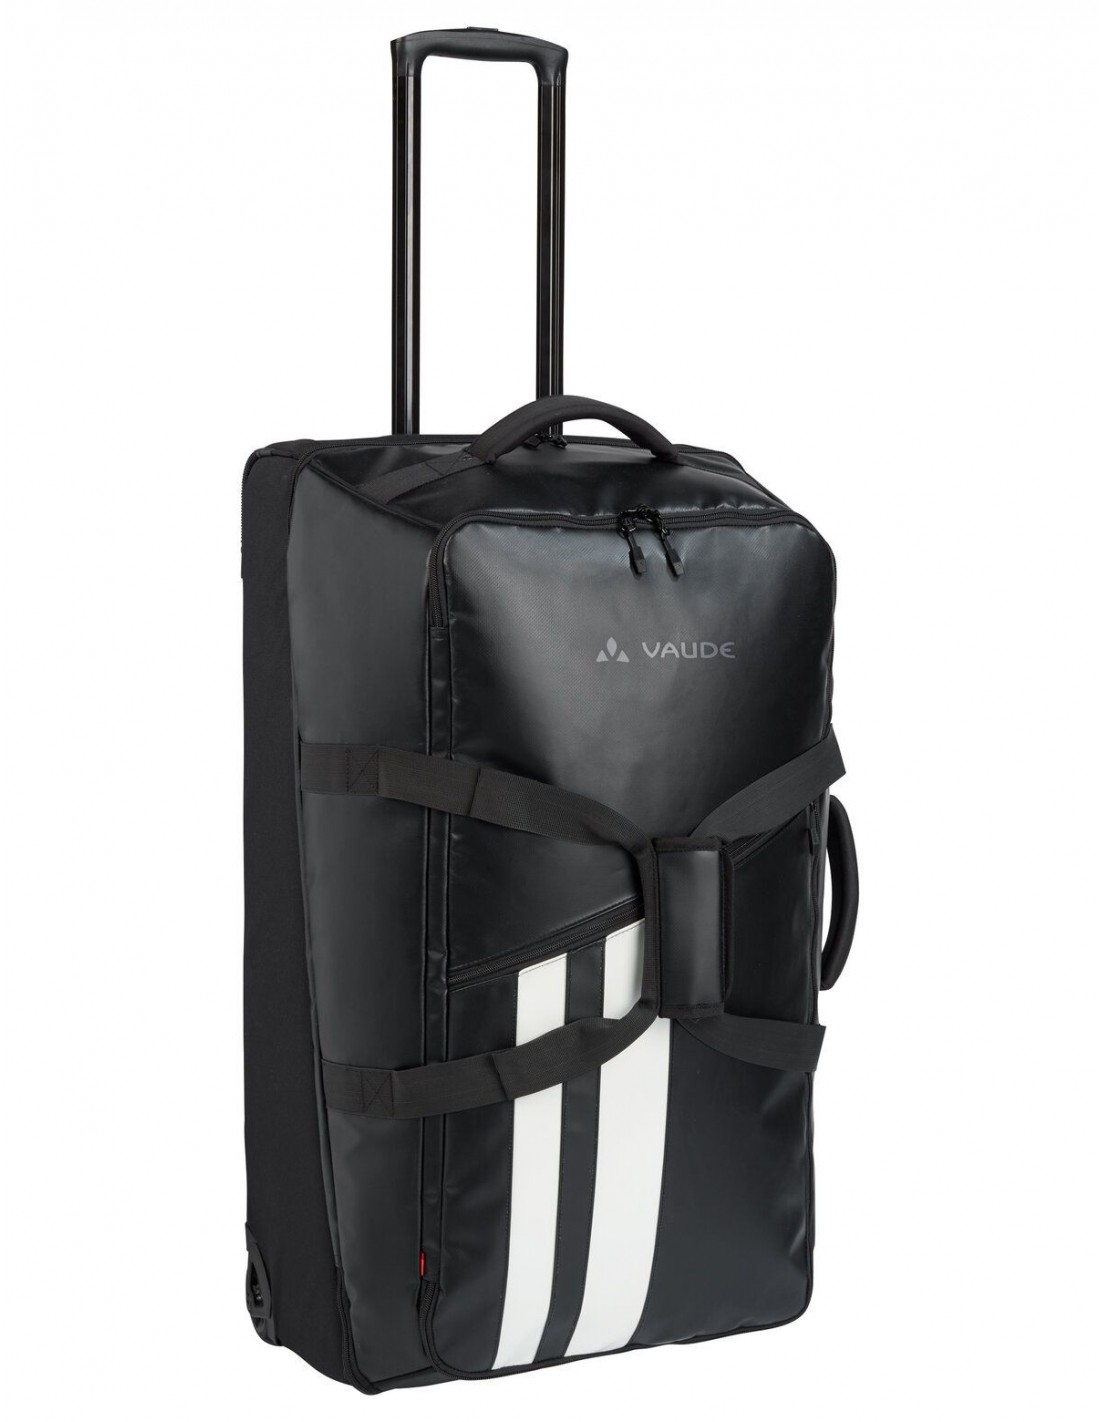 Vaude Reisetasche Rotuma 90 Liter, black (schwarz), Tragegriff, mit Rollen, PVC-frei, für Reisende und Wanderer von Vaude